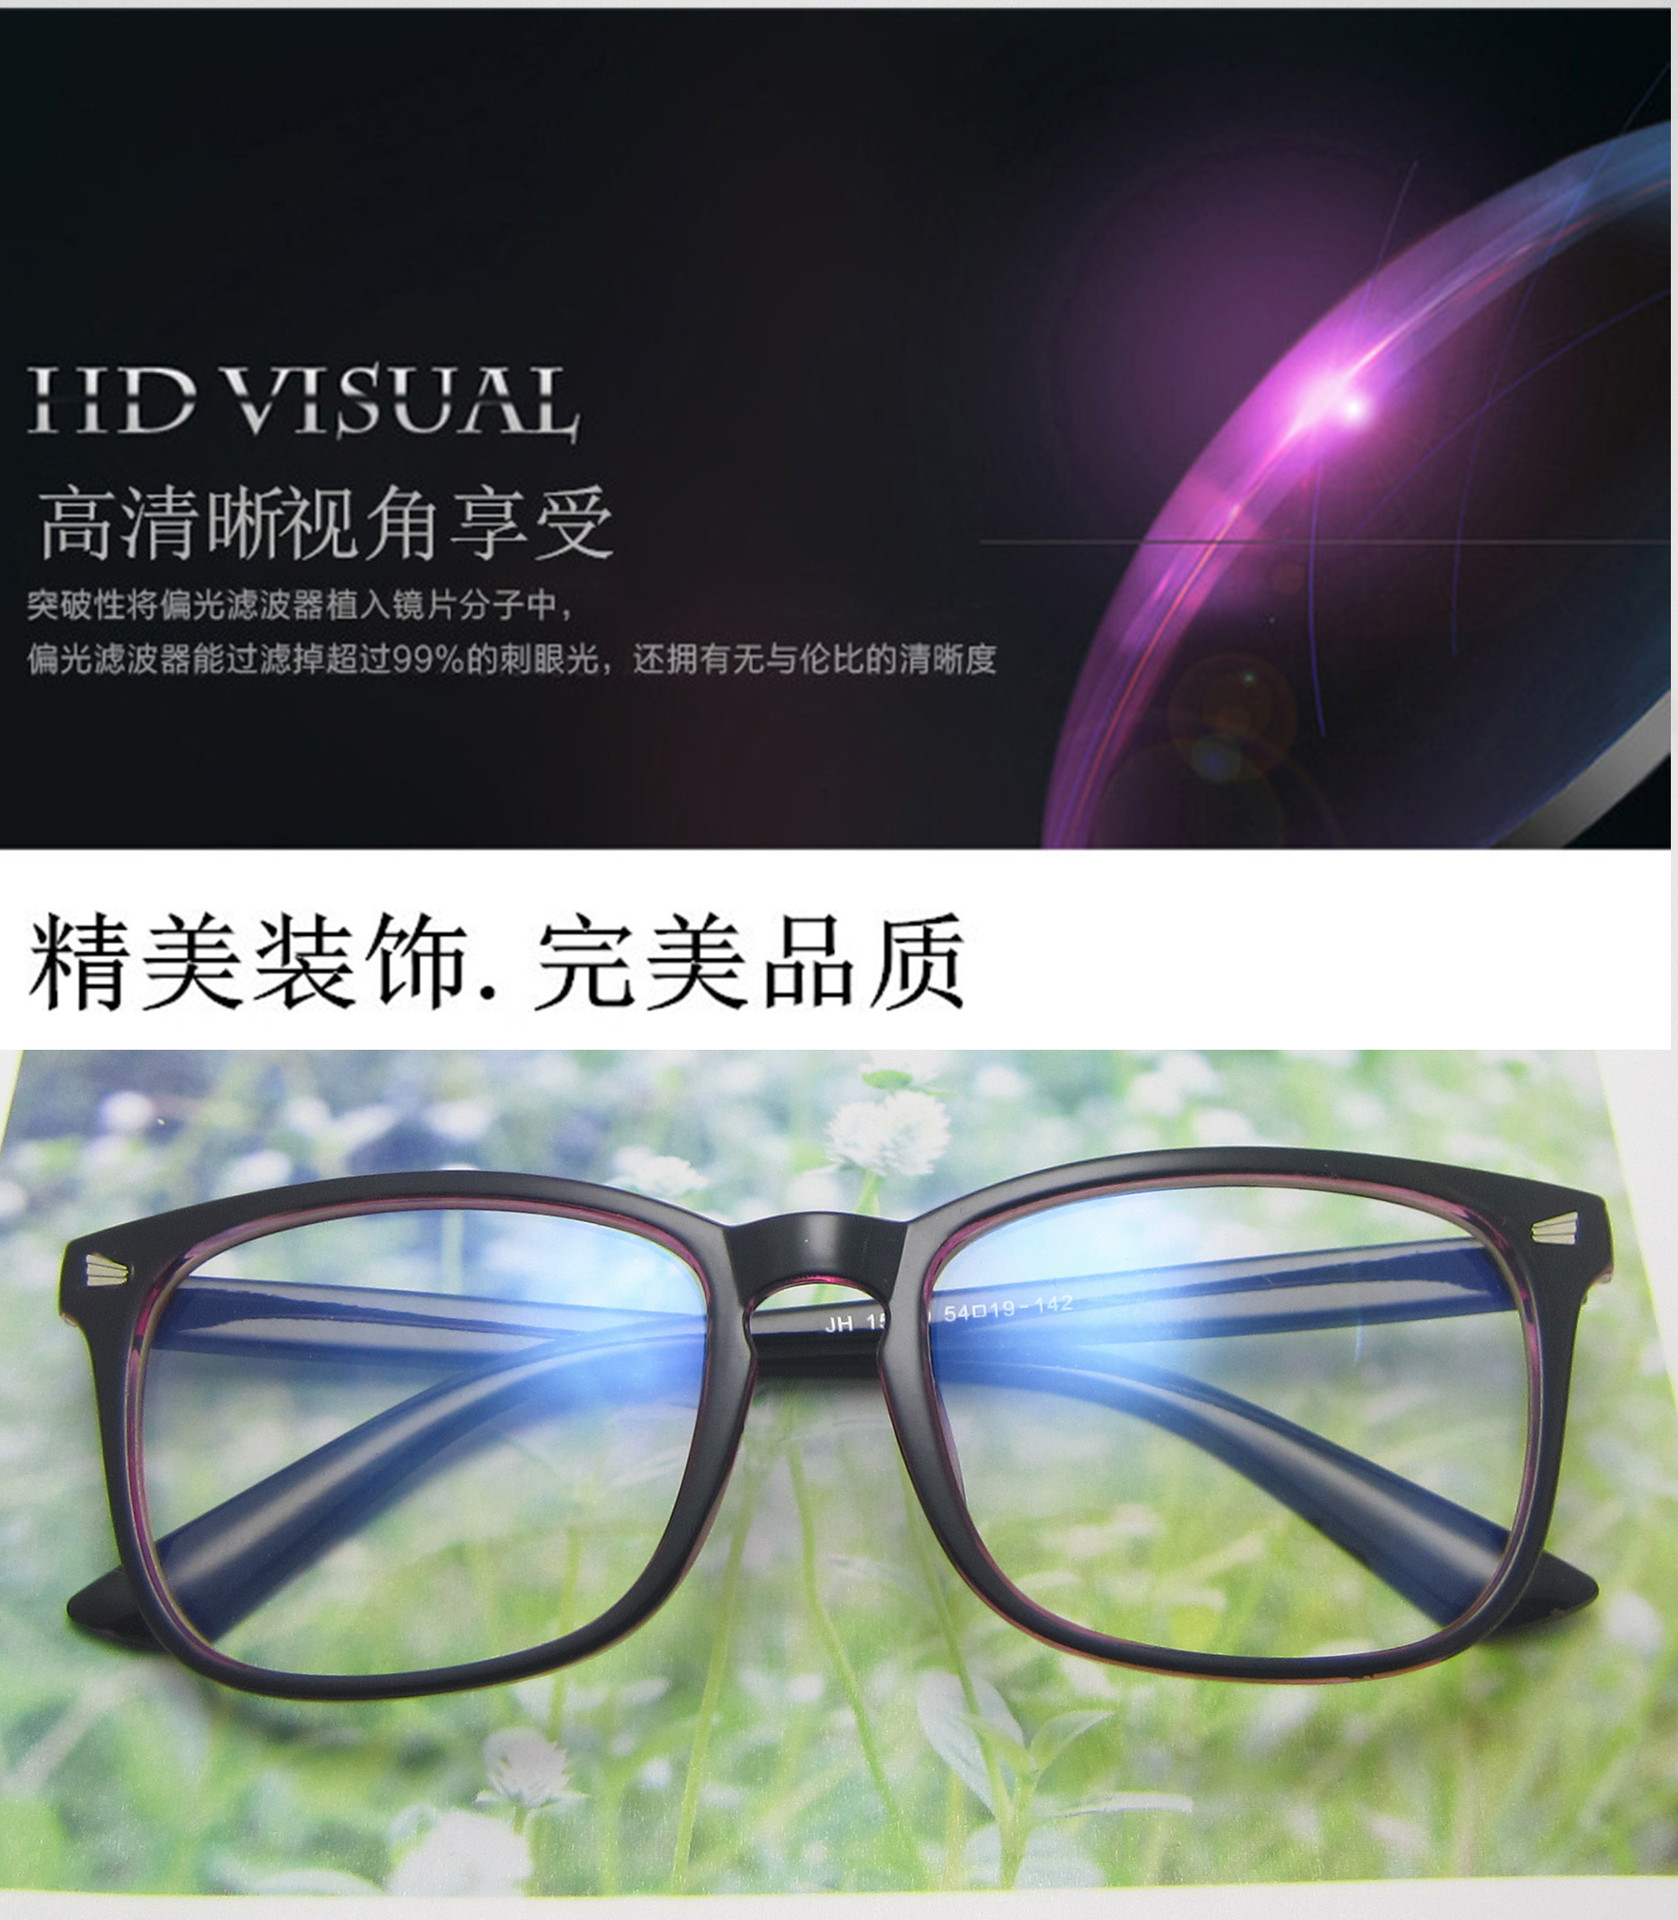 经典米钉电脑平光镜 复古镜框15969 配近视眼镜架韩版潮流眼镜示例图6